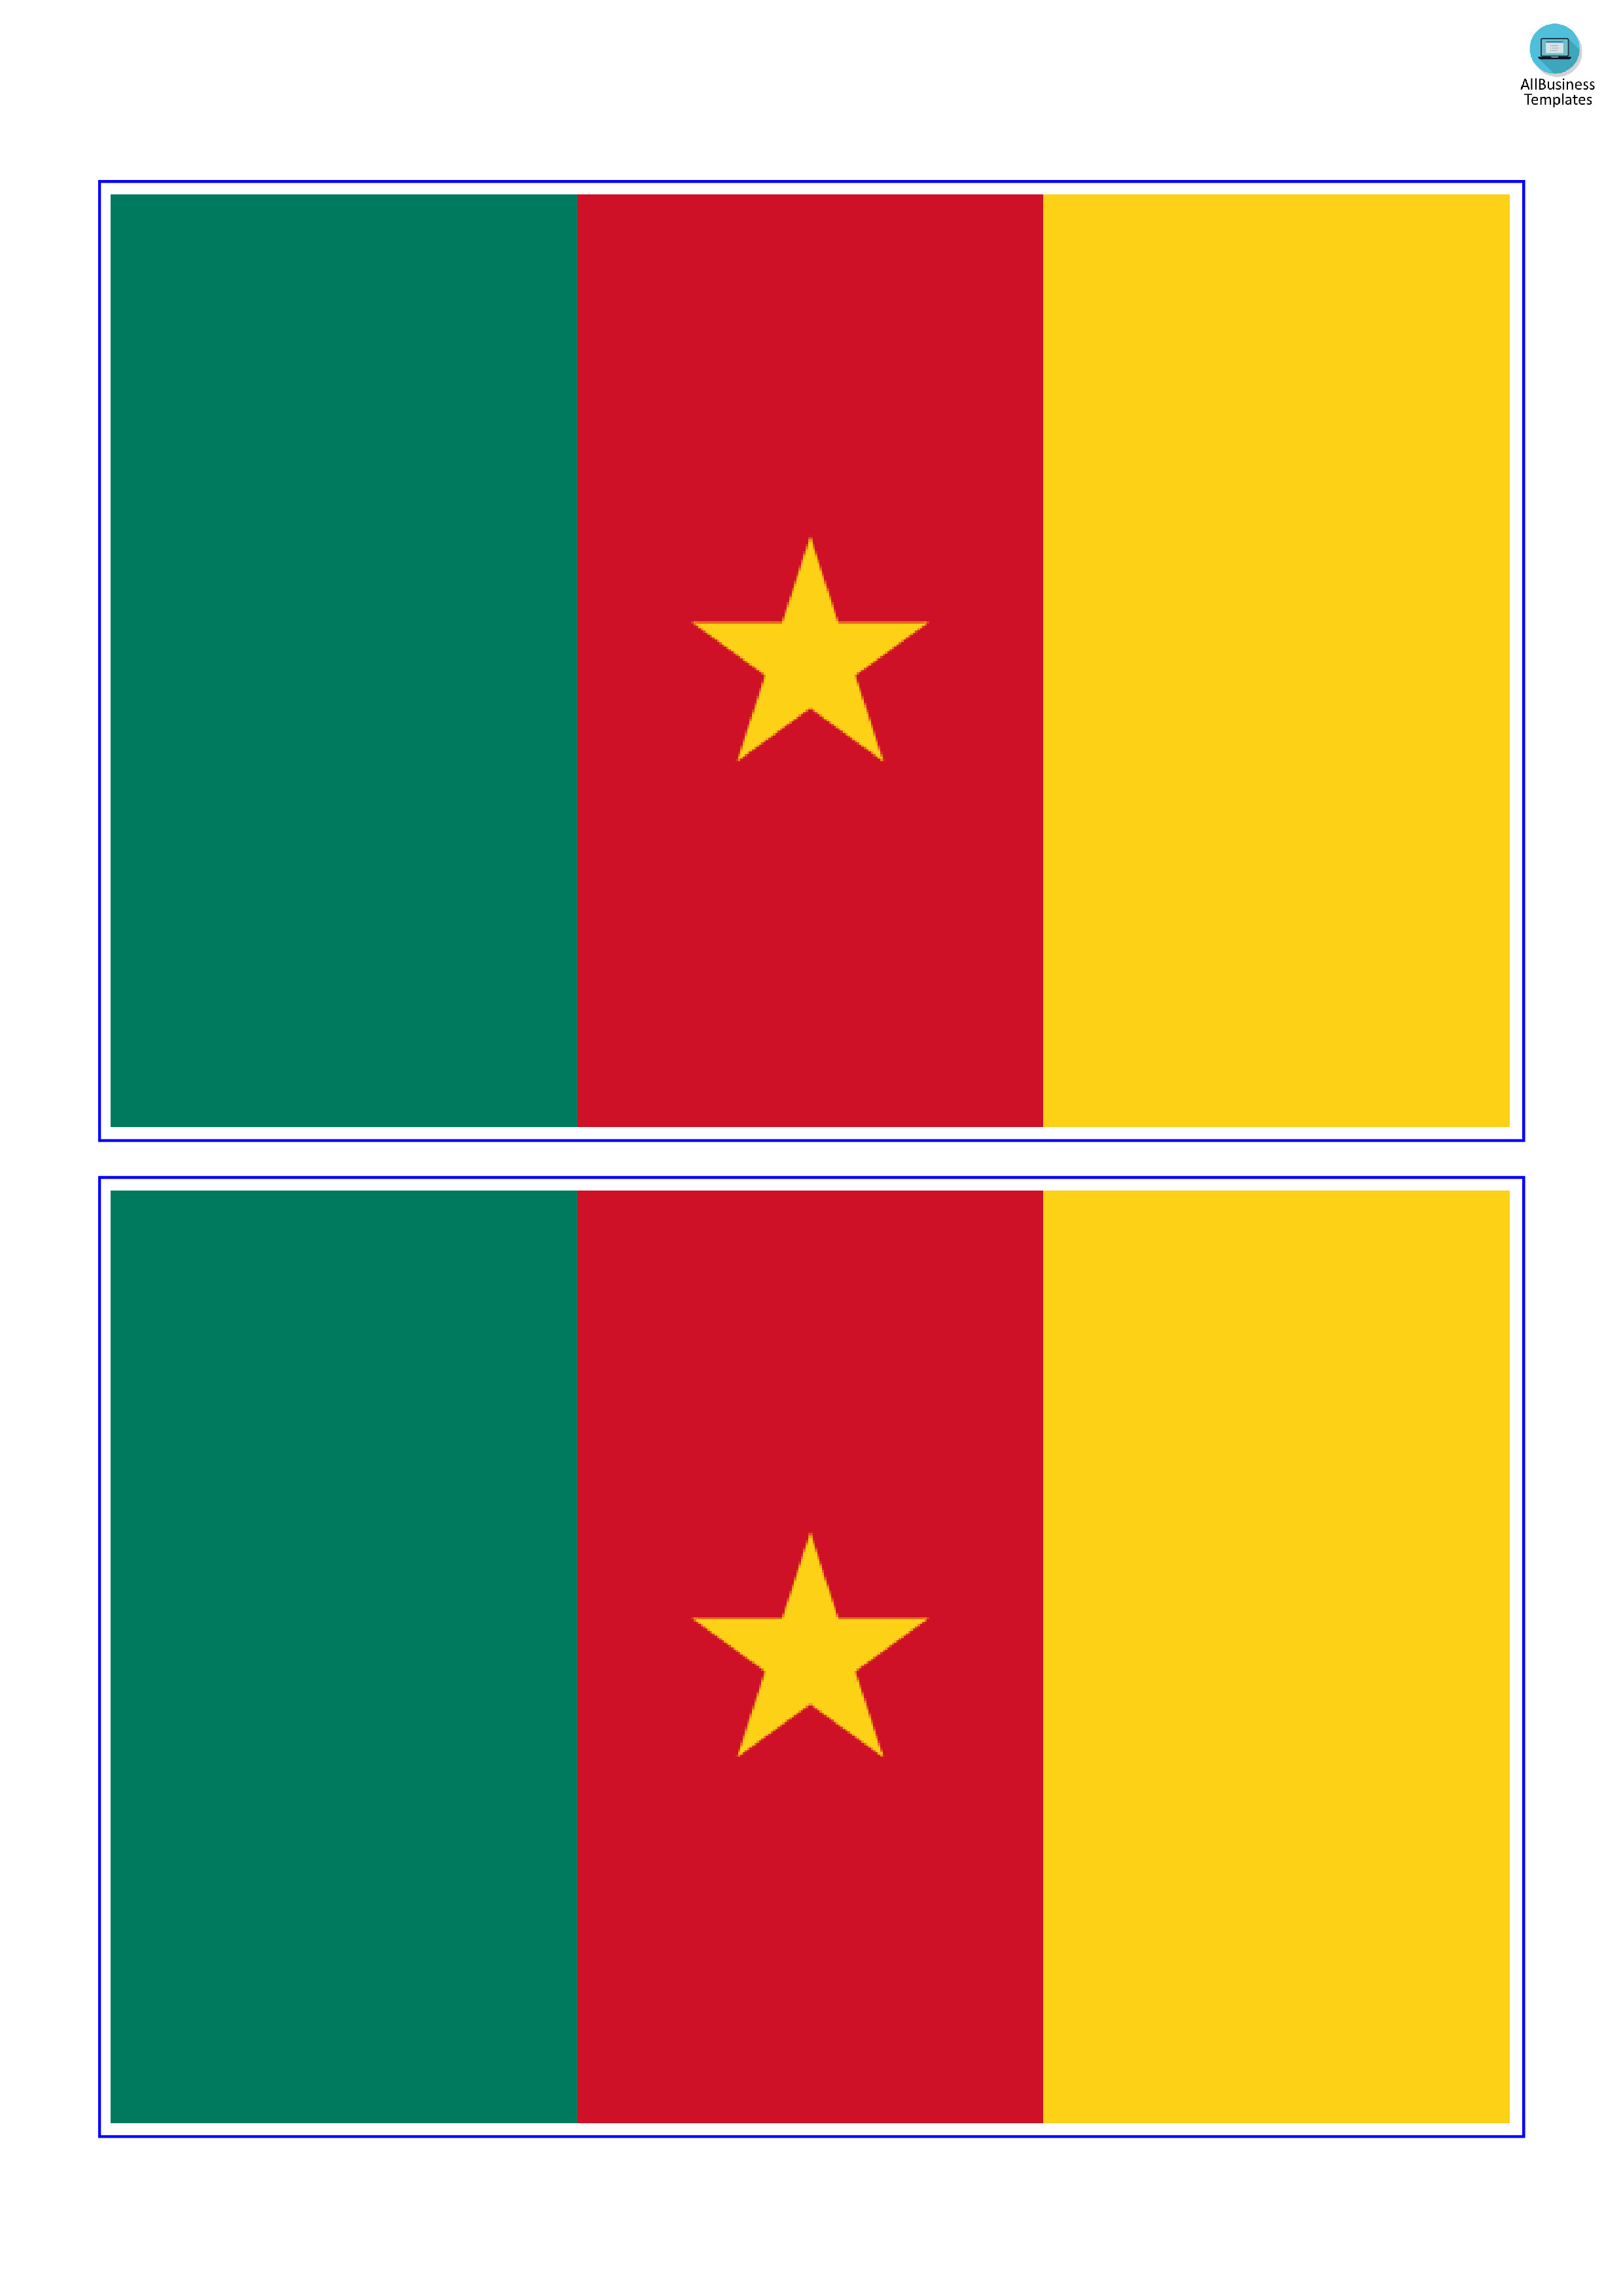 cameroon flag plantilla imagen principal